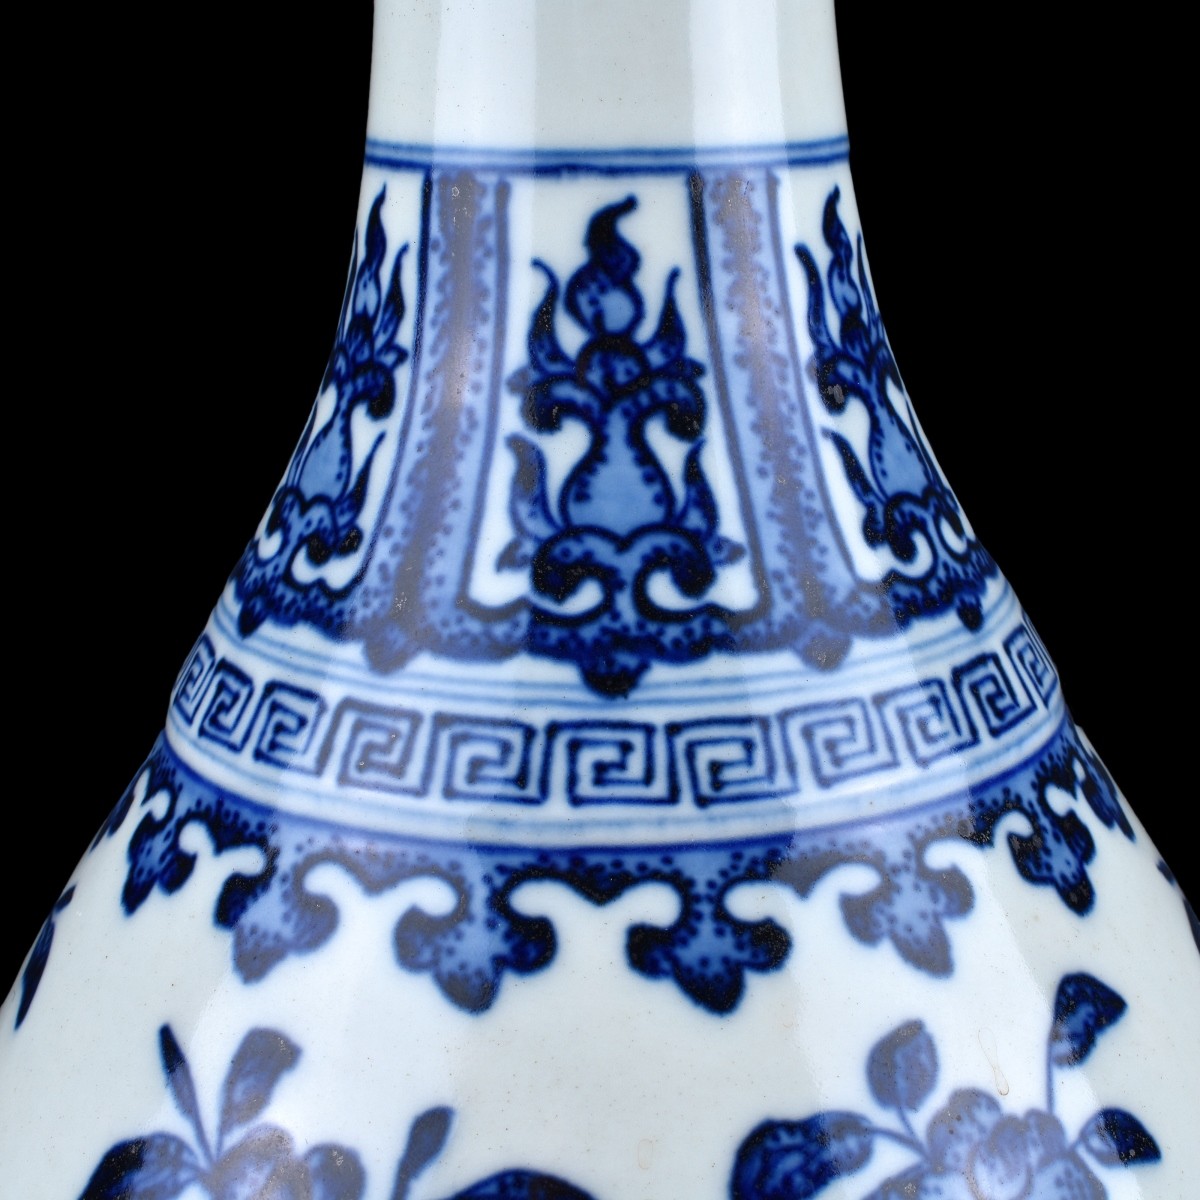 Chinese Kangxi Style Blue and White Porcelain Vase